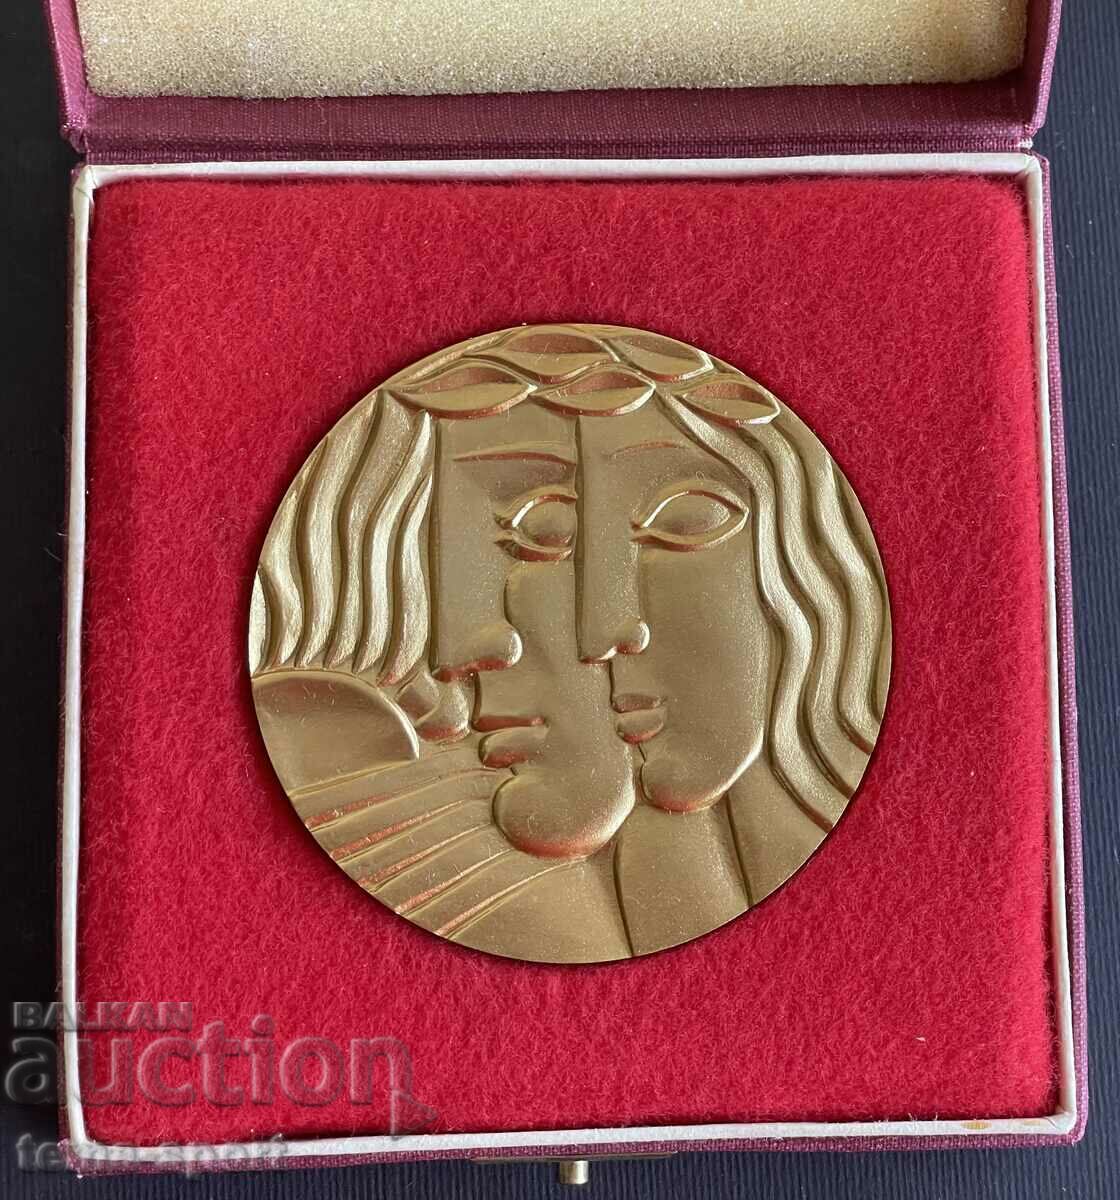 12 Bulgaria Olympic merit plaque BOK gold